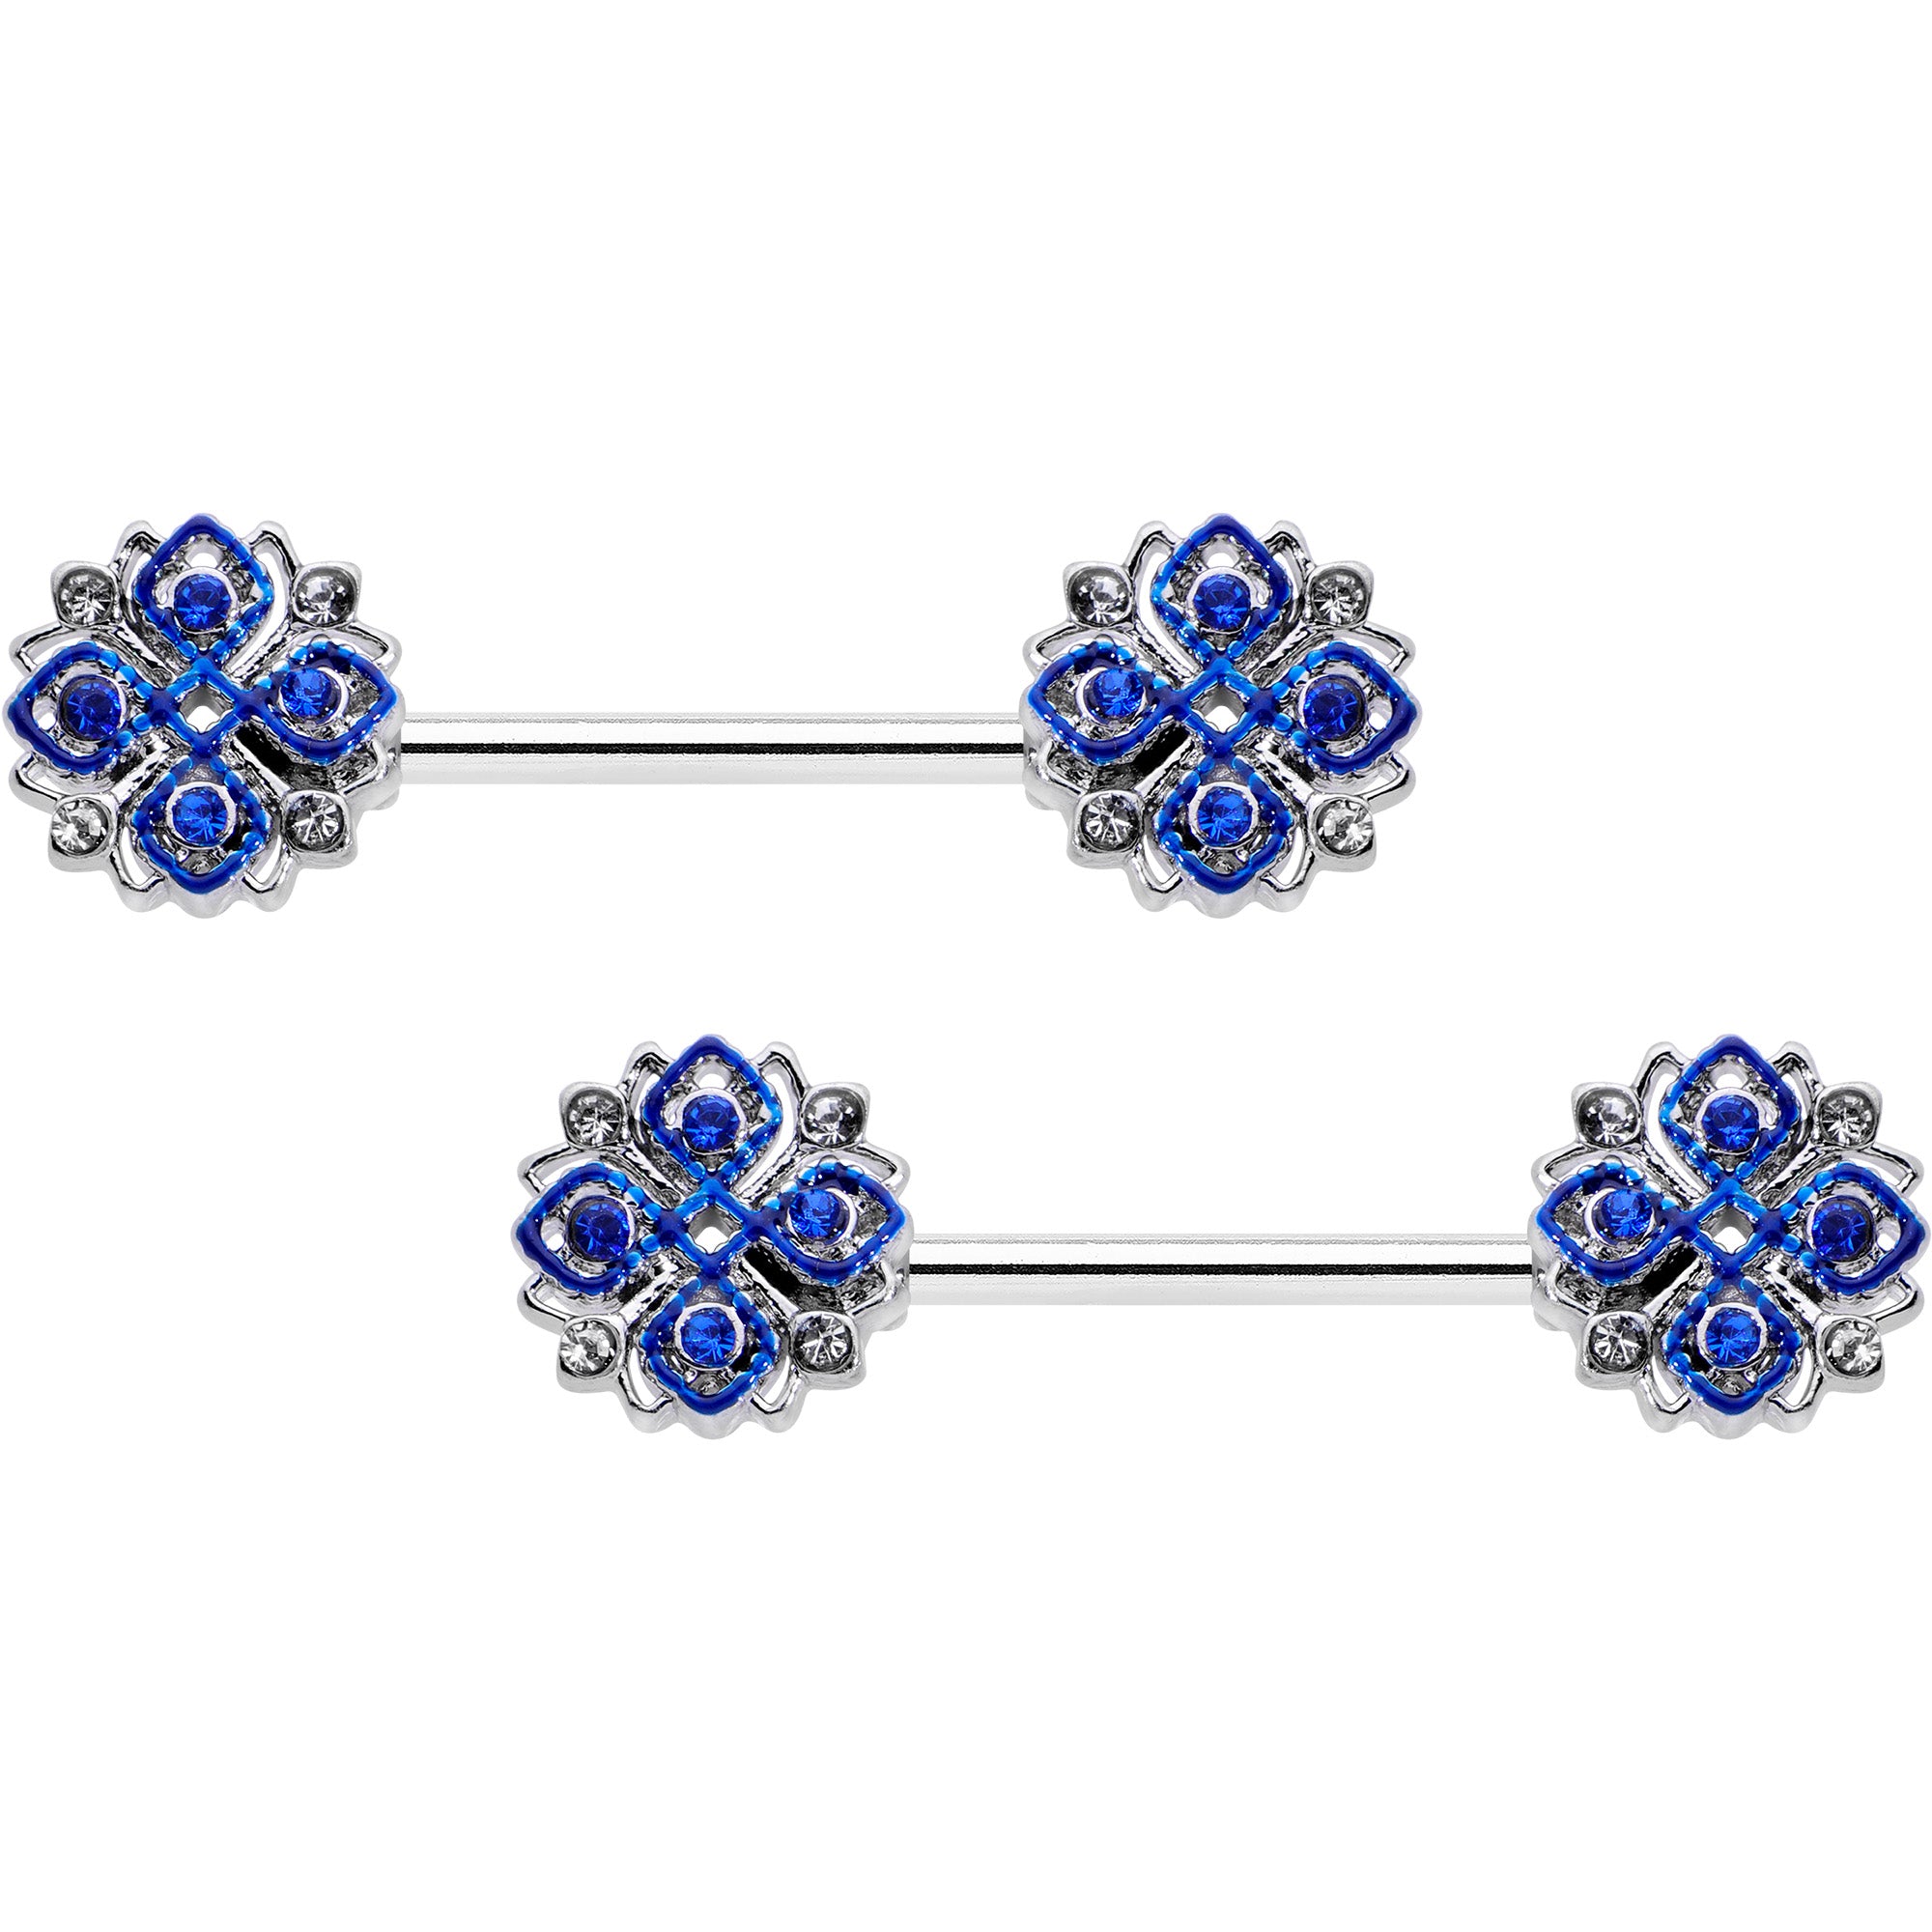 14 Gauge 9/16 Clear Blue Gem Embellished Cross Barbell Nipple Ring Set